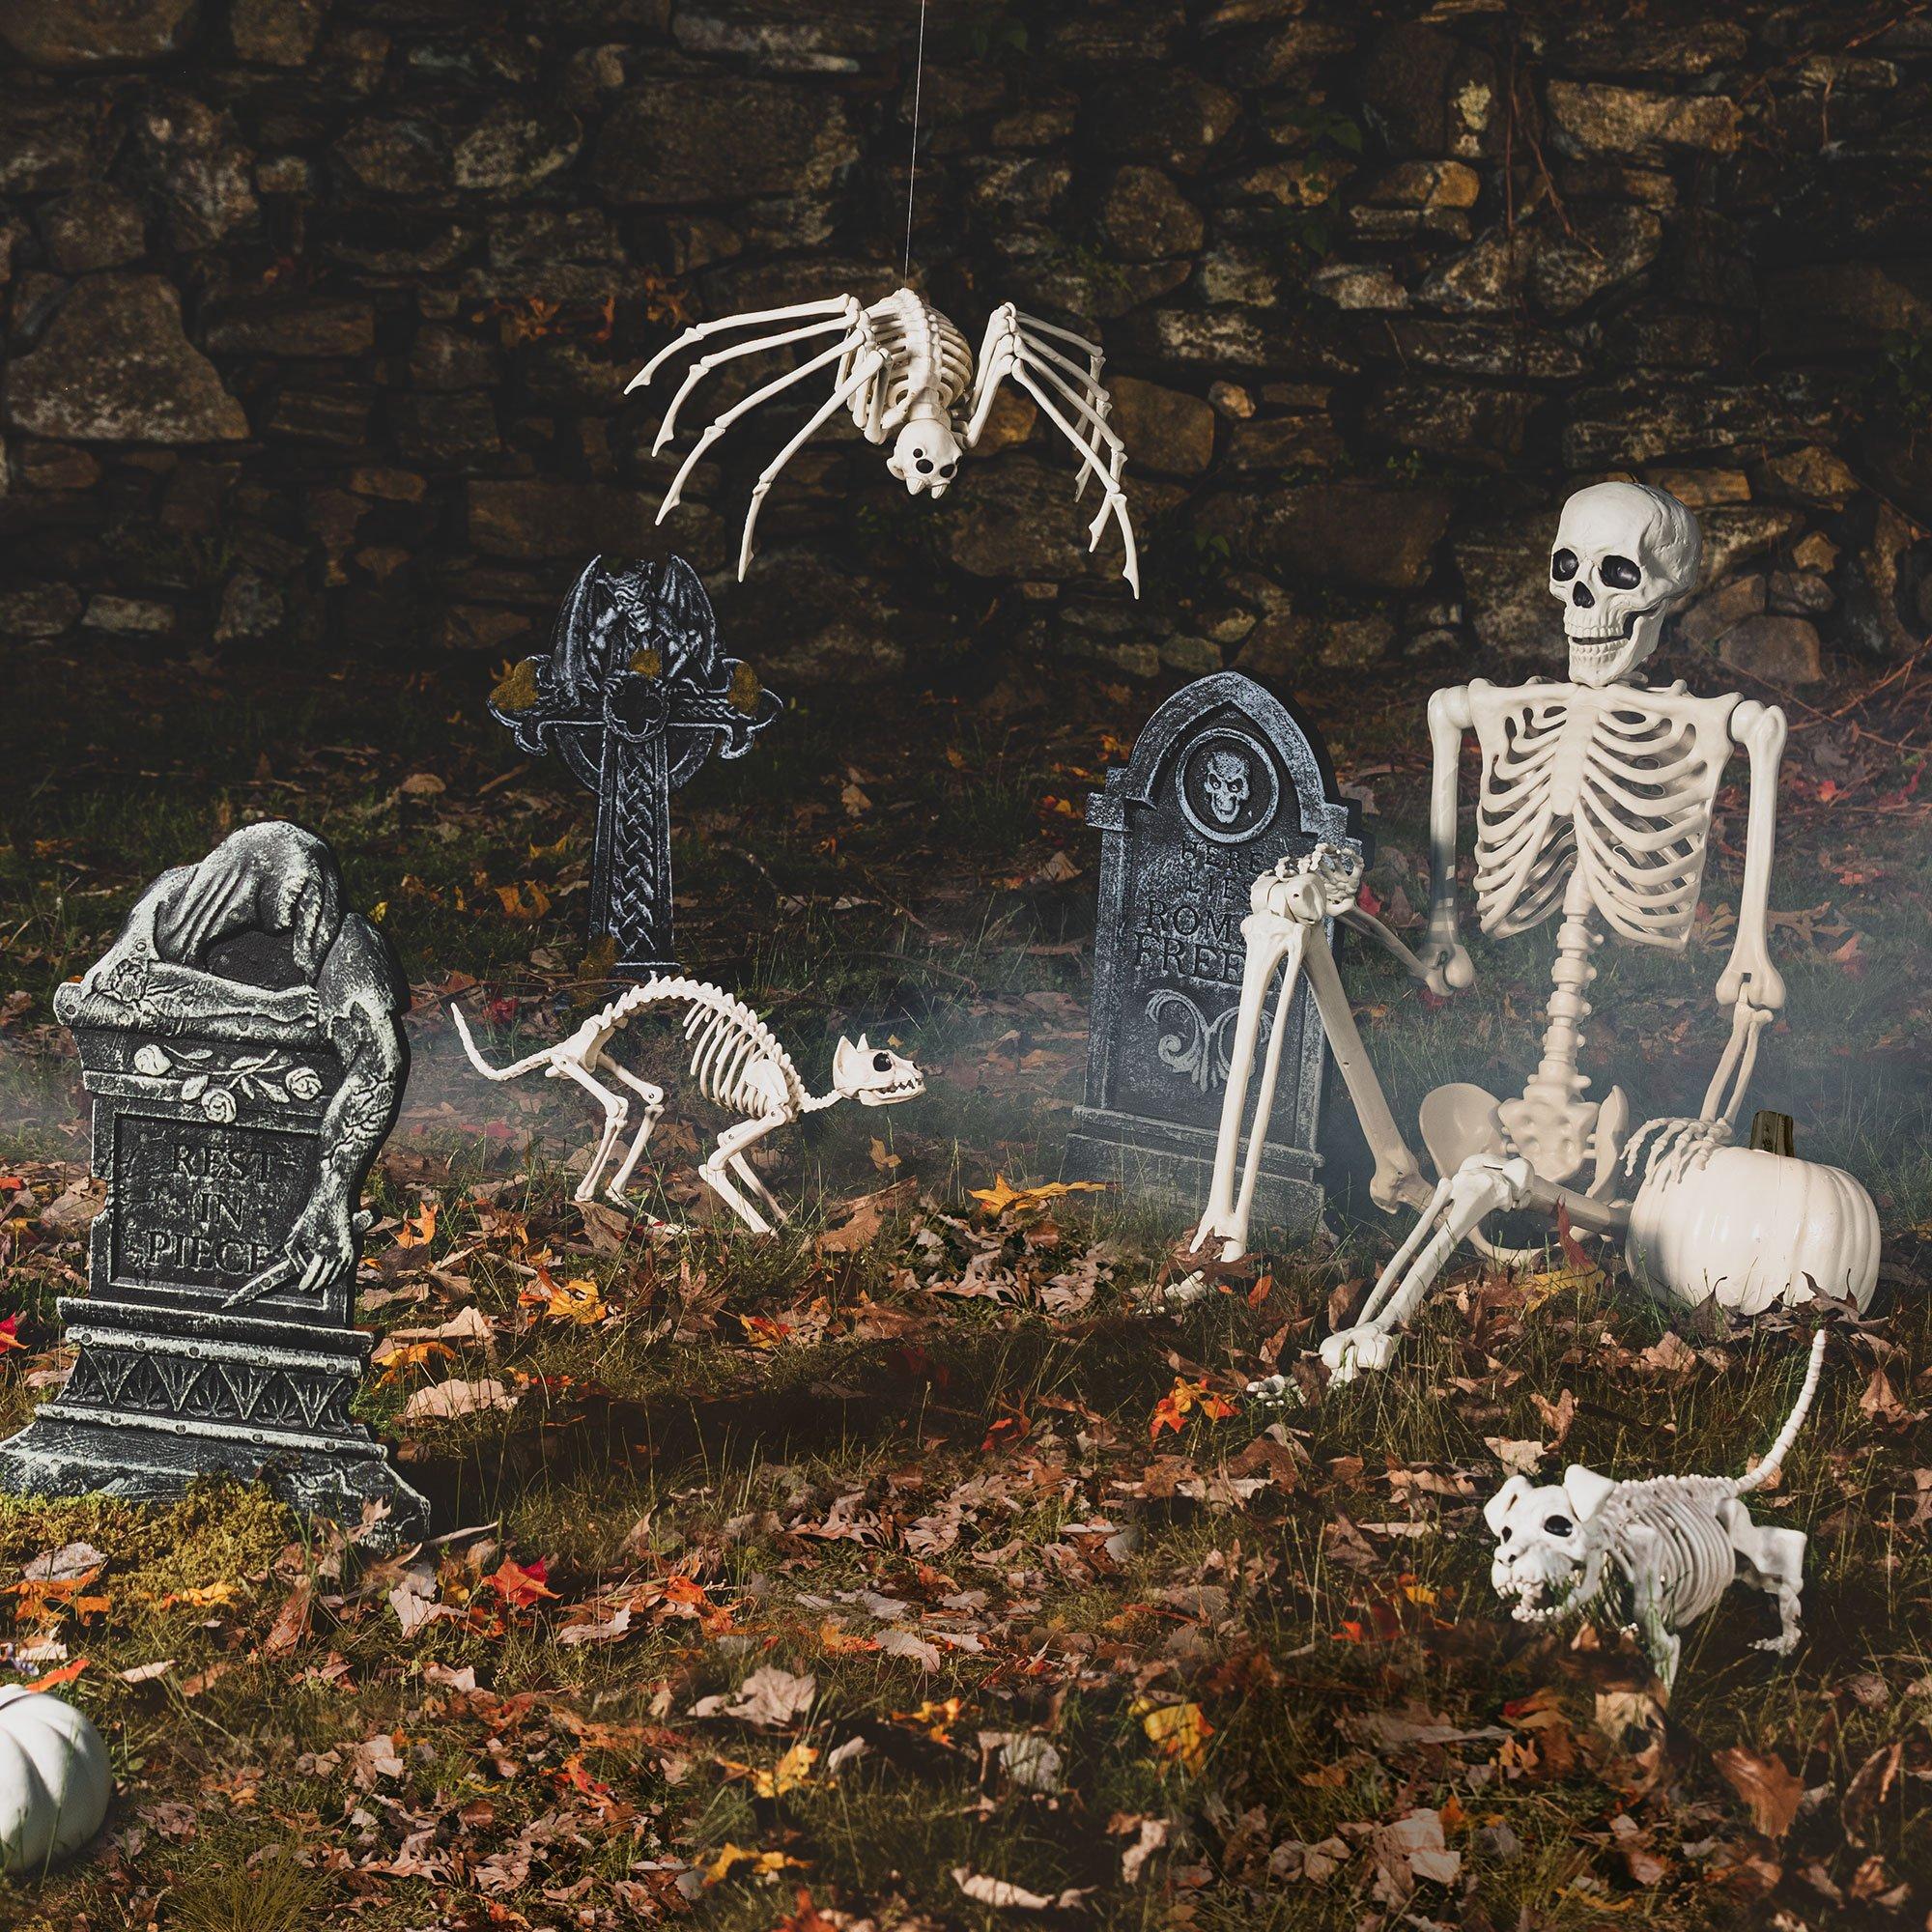 Skeleton Dog Decoration, 20in x 6.5in